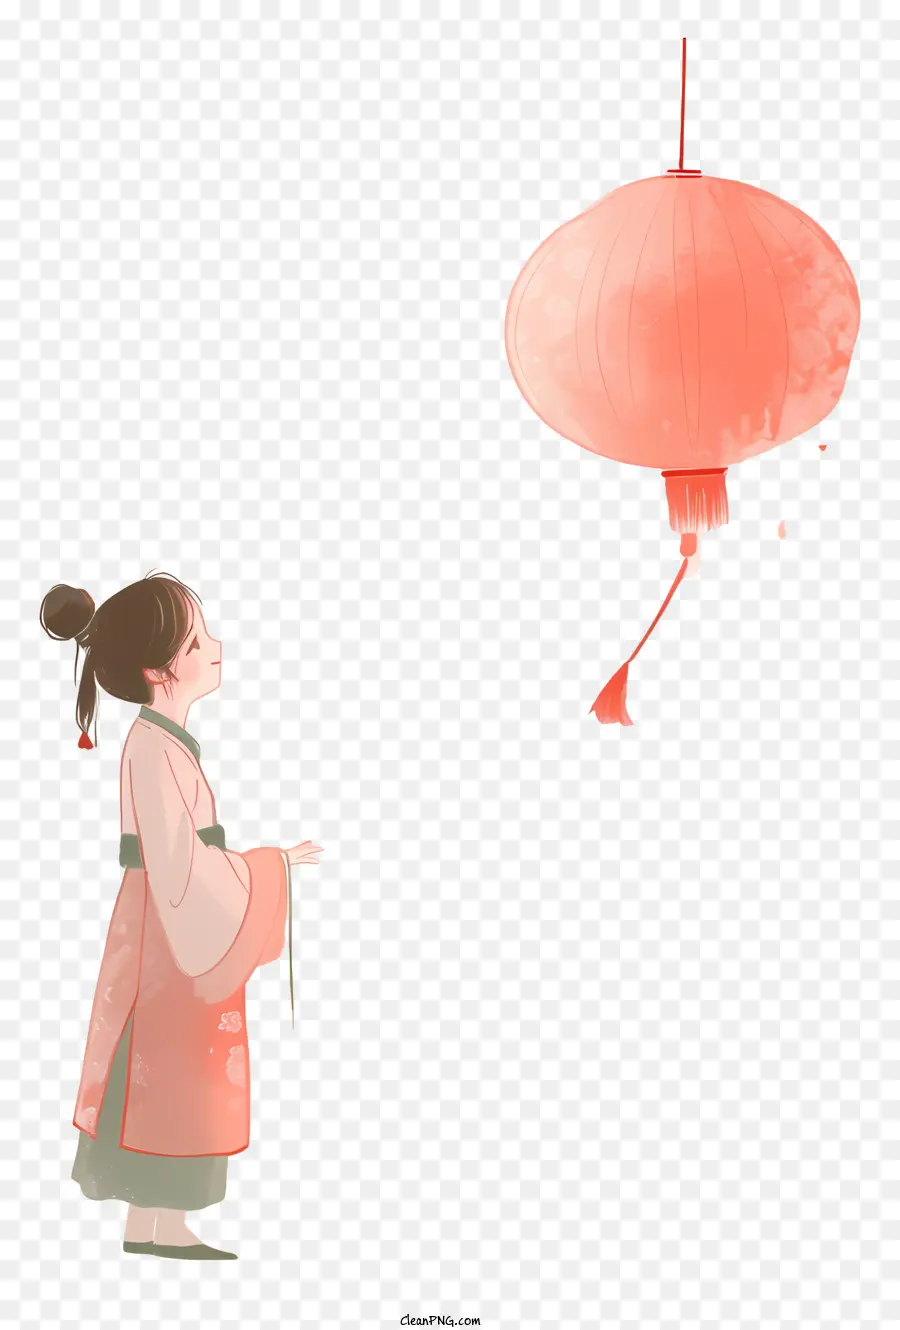 Chinesische Lampion Frau in rosa Kimono Orangenpapier Laterne überraschte Ausdruck Japanische Kultur - Frau in Kimono hält Laterne, sieht überrascht aus